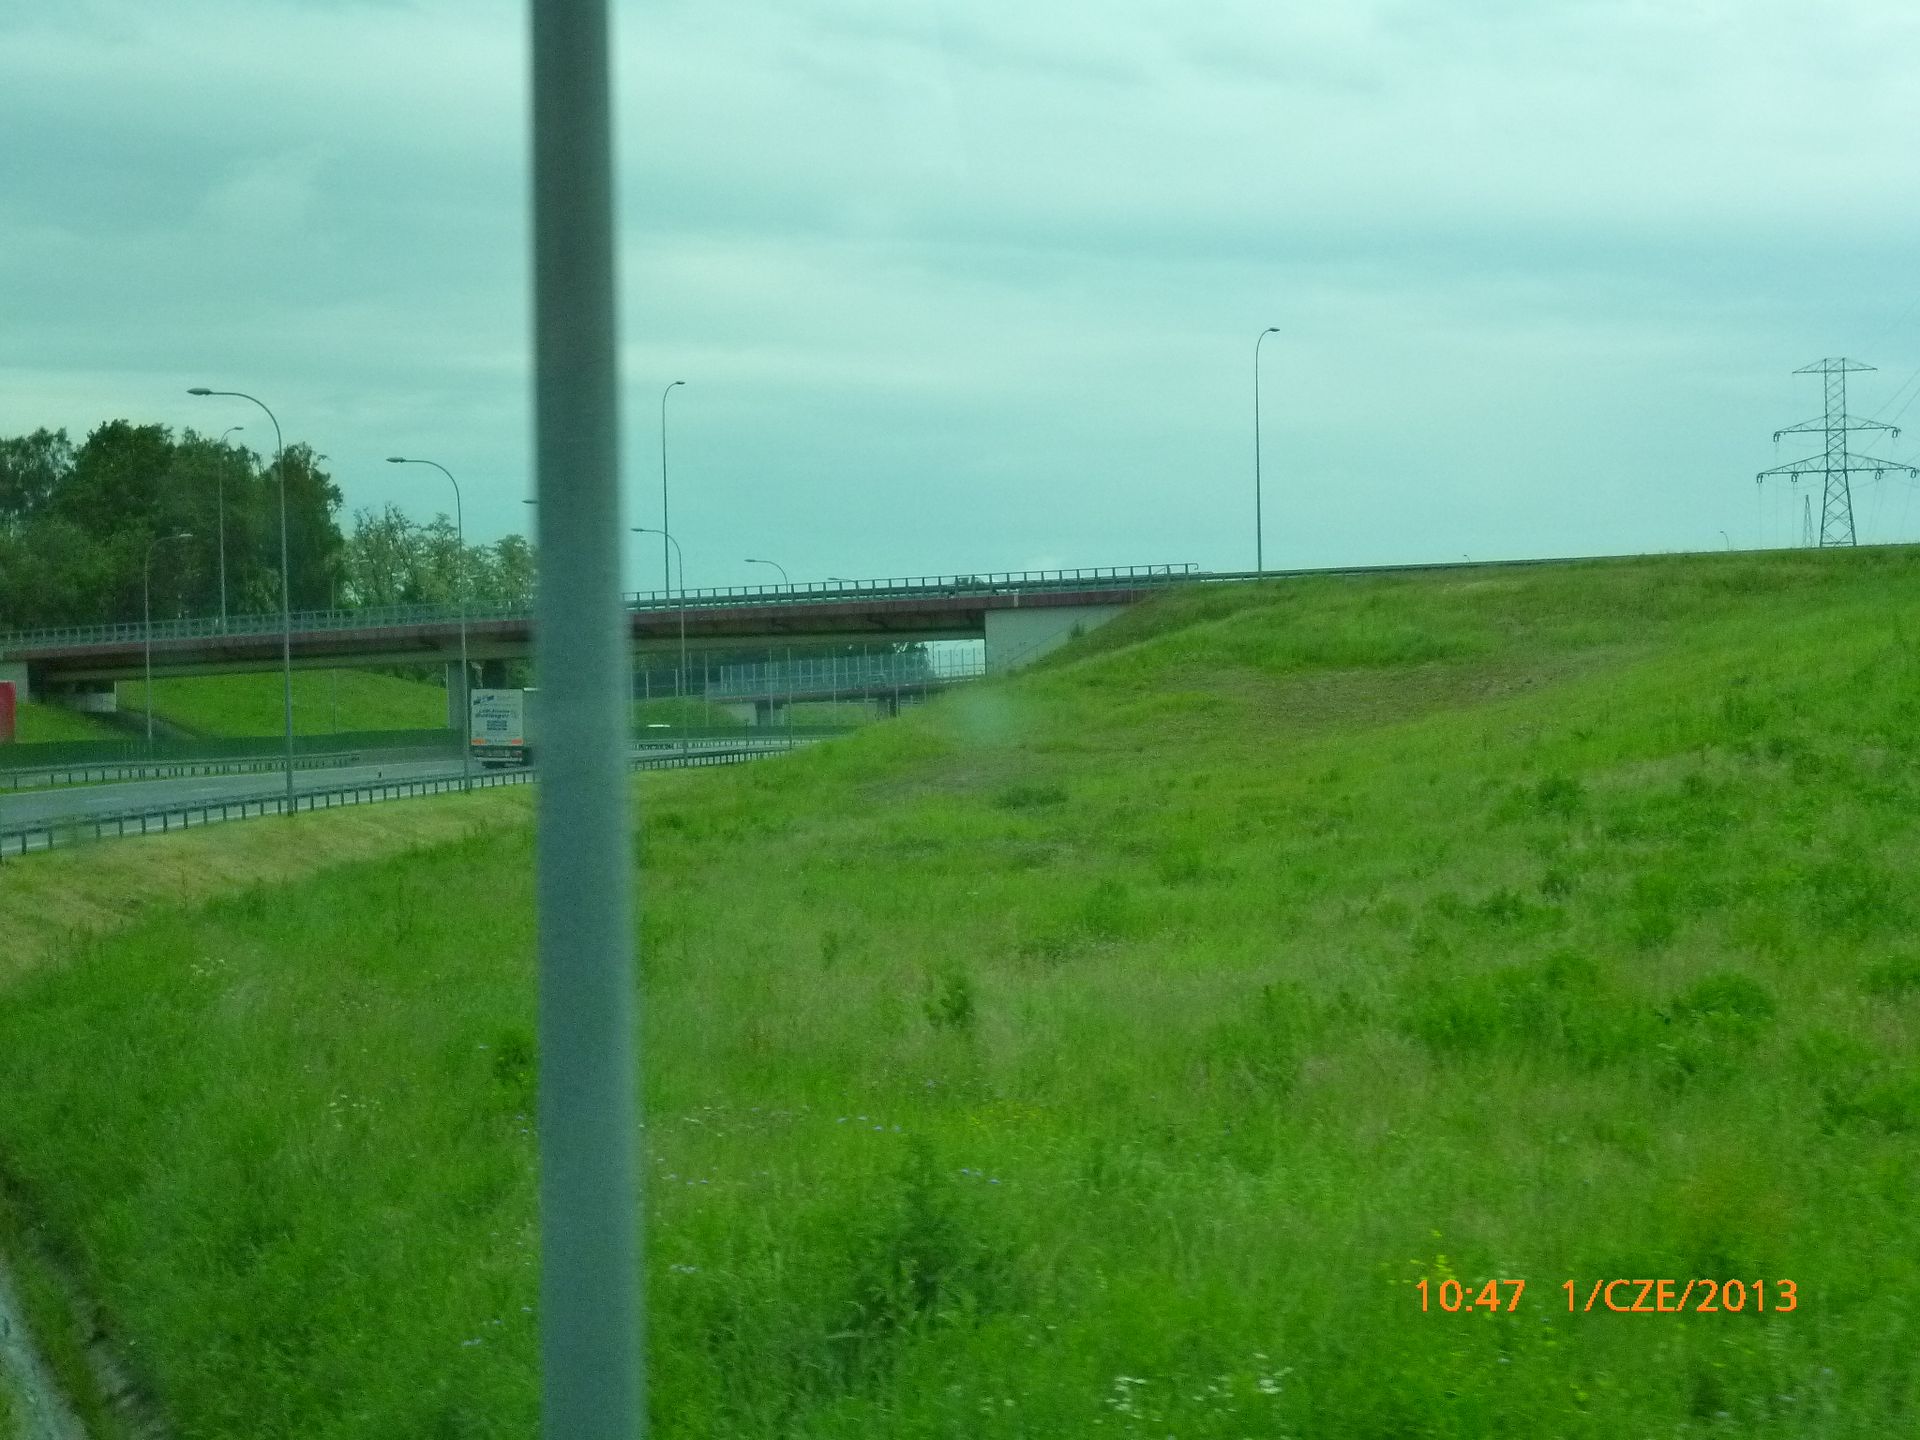  Wymiana dylatacji wiaduktu w ciągu autostrady A4 Katowice-Kraków w okolicach węzła Murckowska zaraz po Świętach Wielkanocnych